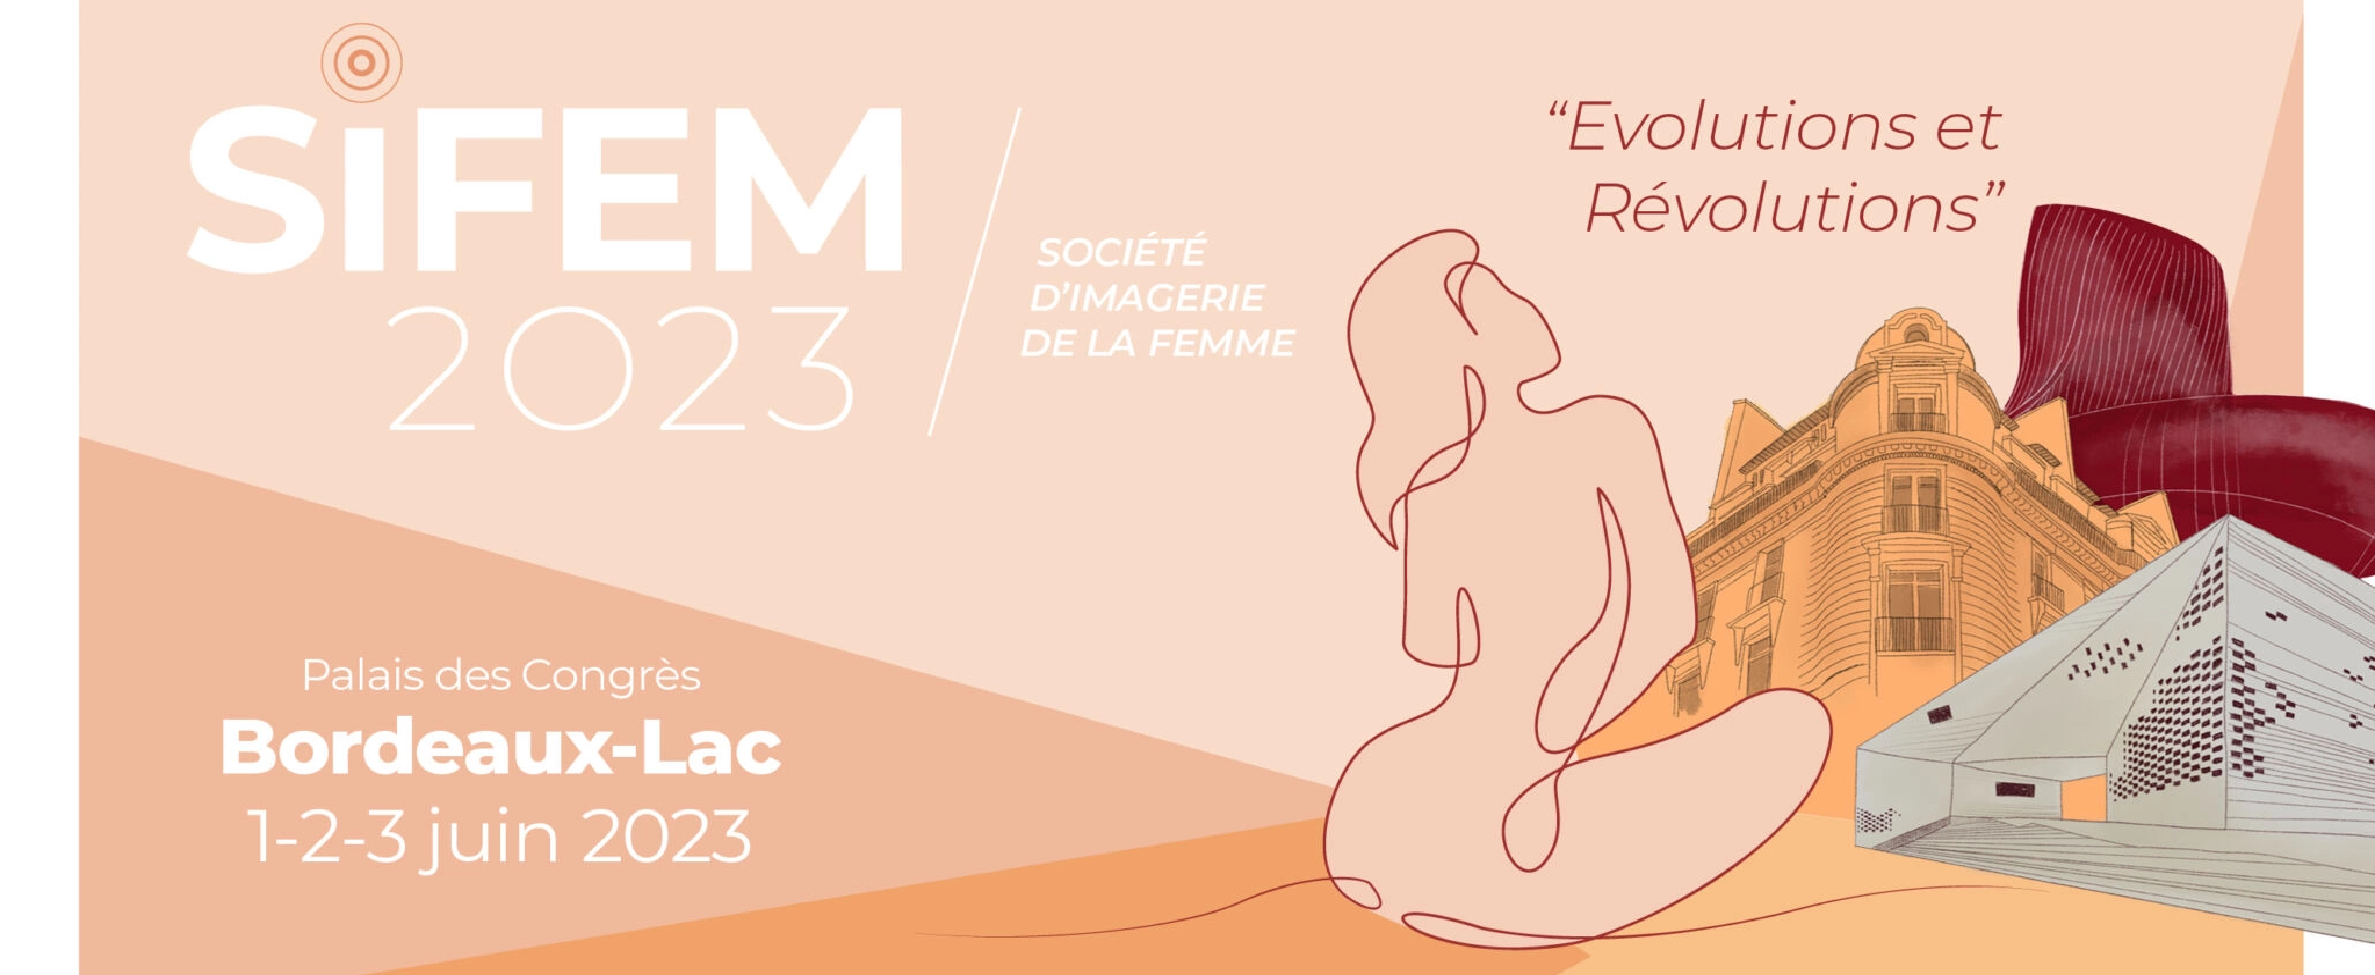 Congrès Societe d'Imagerie de la Femme - SIFEM 2023